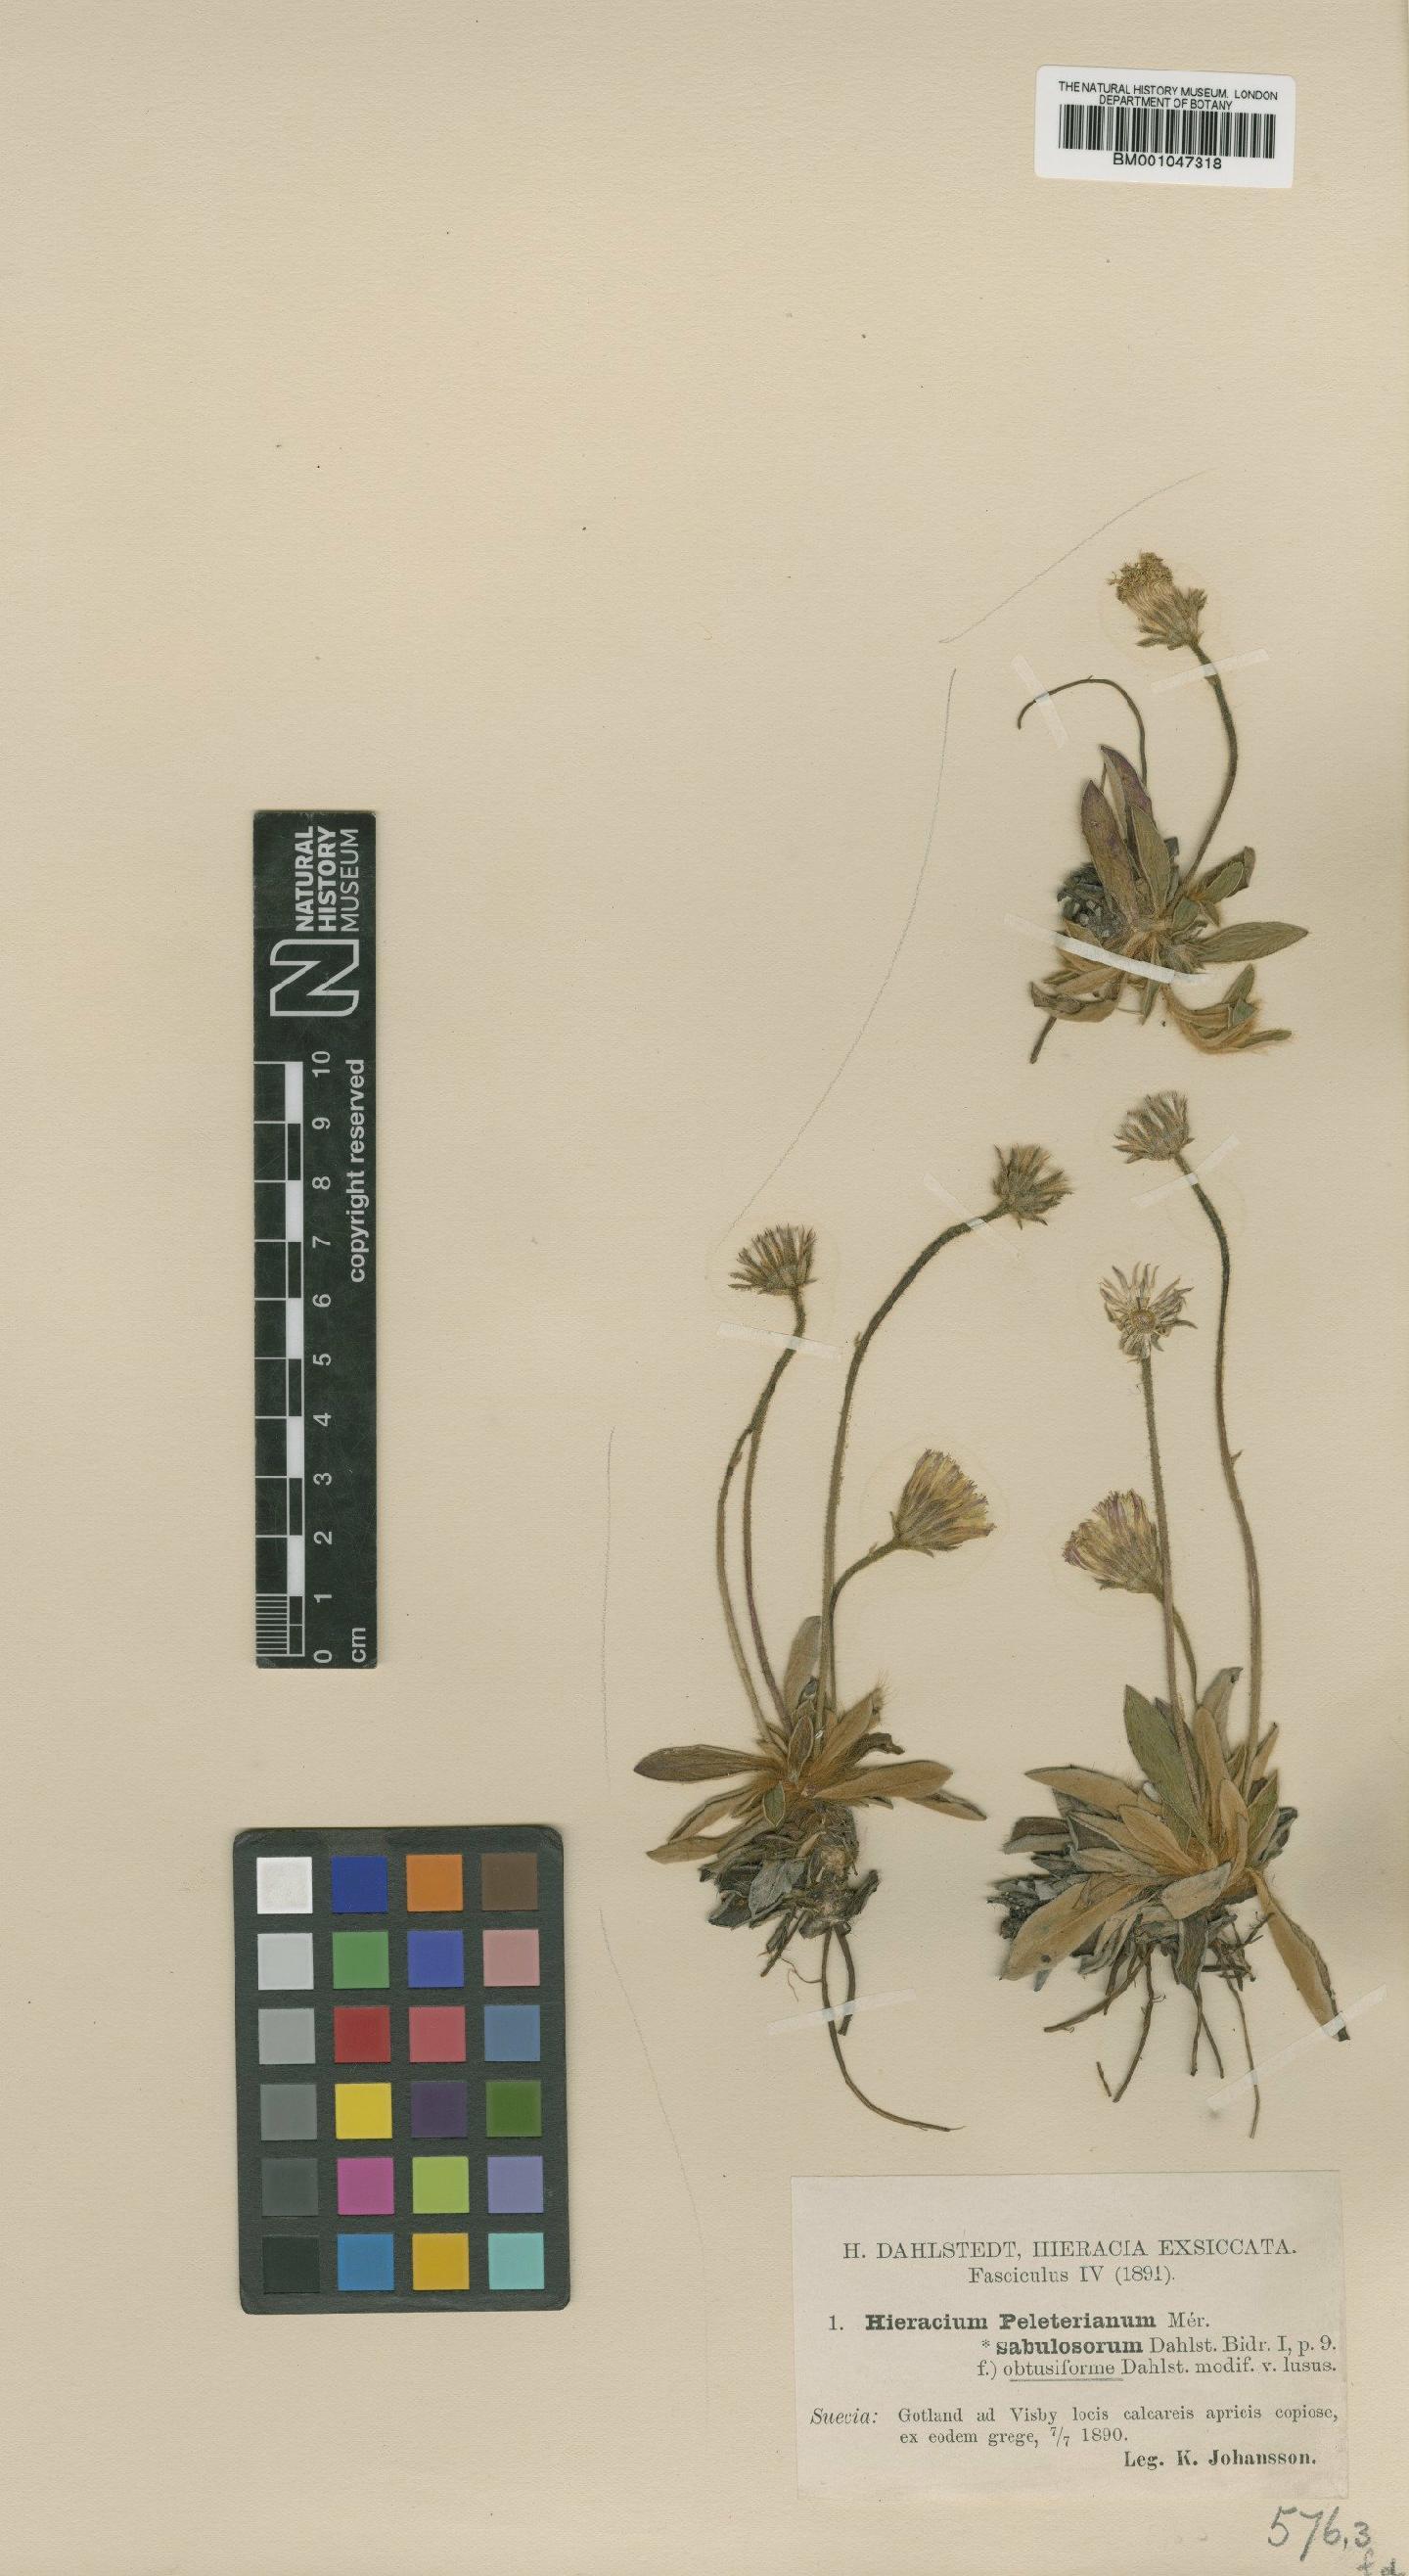 To NHMUK collection (Hieracium peleterianum subsp. sabulosorum Dahlst.; NHMUK:ecatalogue:2761340)